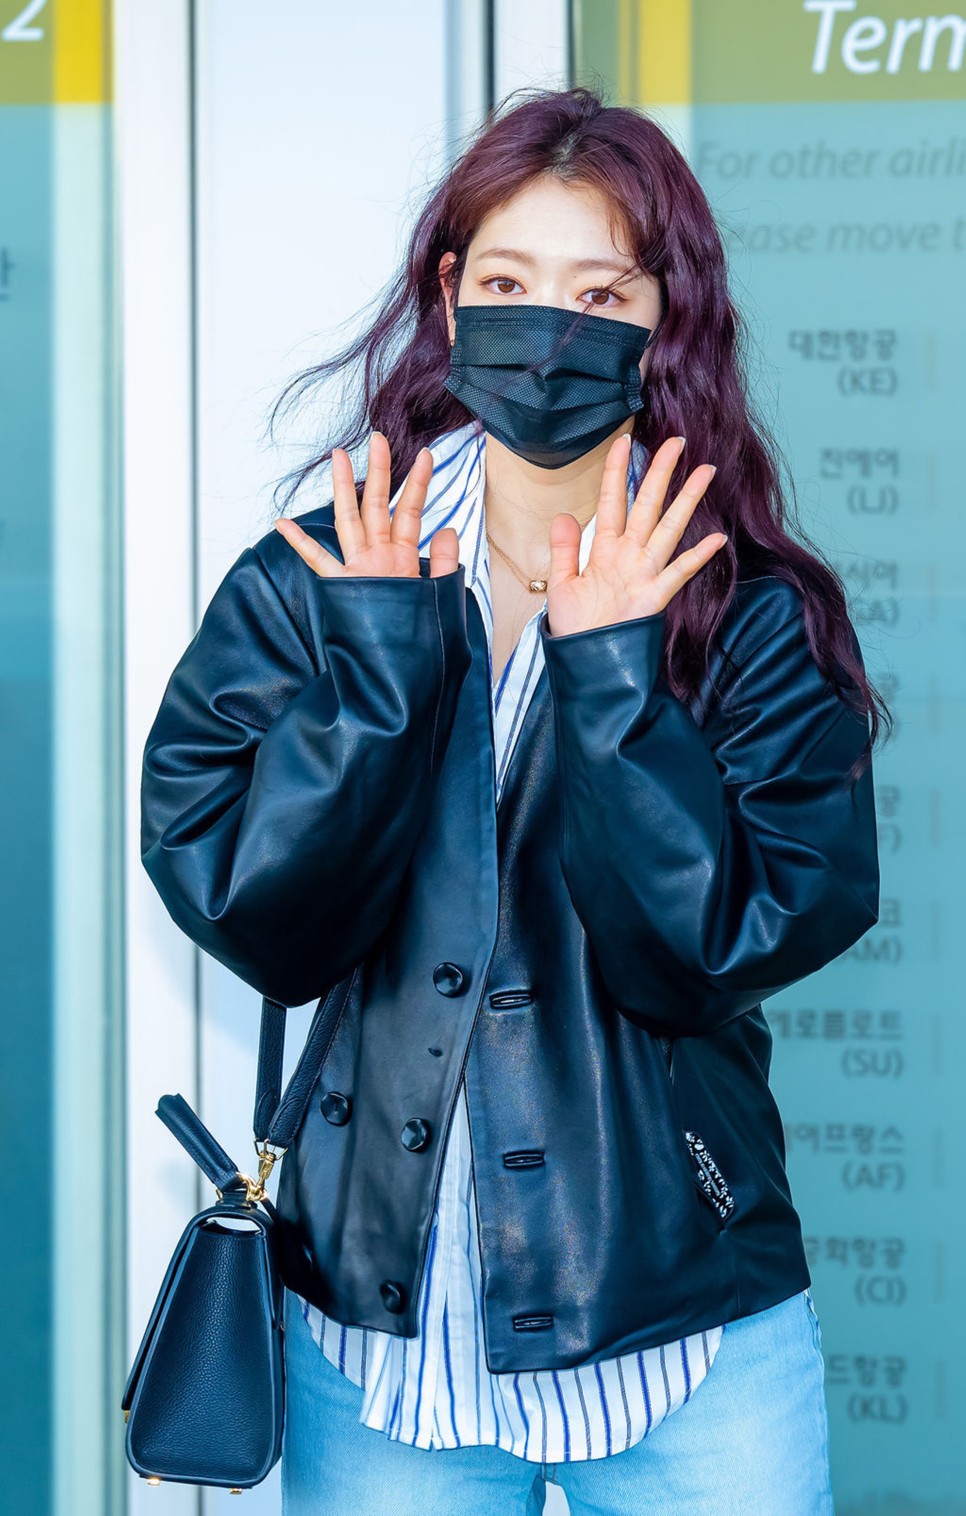 박신혜 공항패션 에르메스 라이벌 30대 여자명품가방 브랜드 모이나 레잔백 가격은?